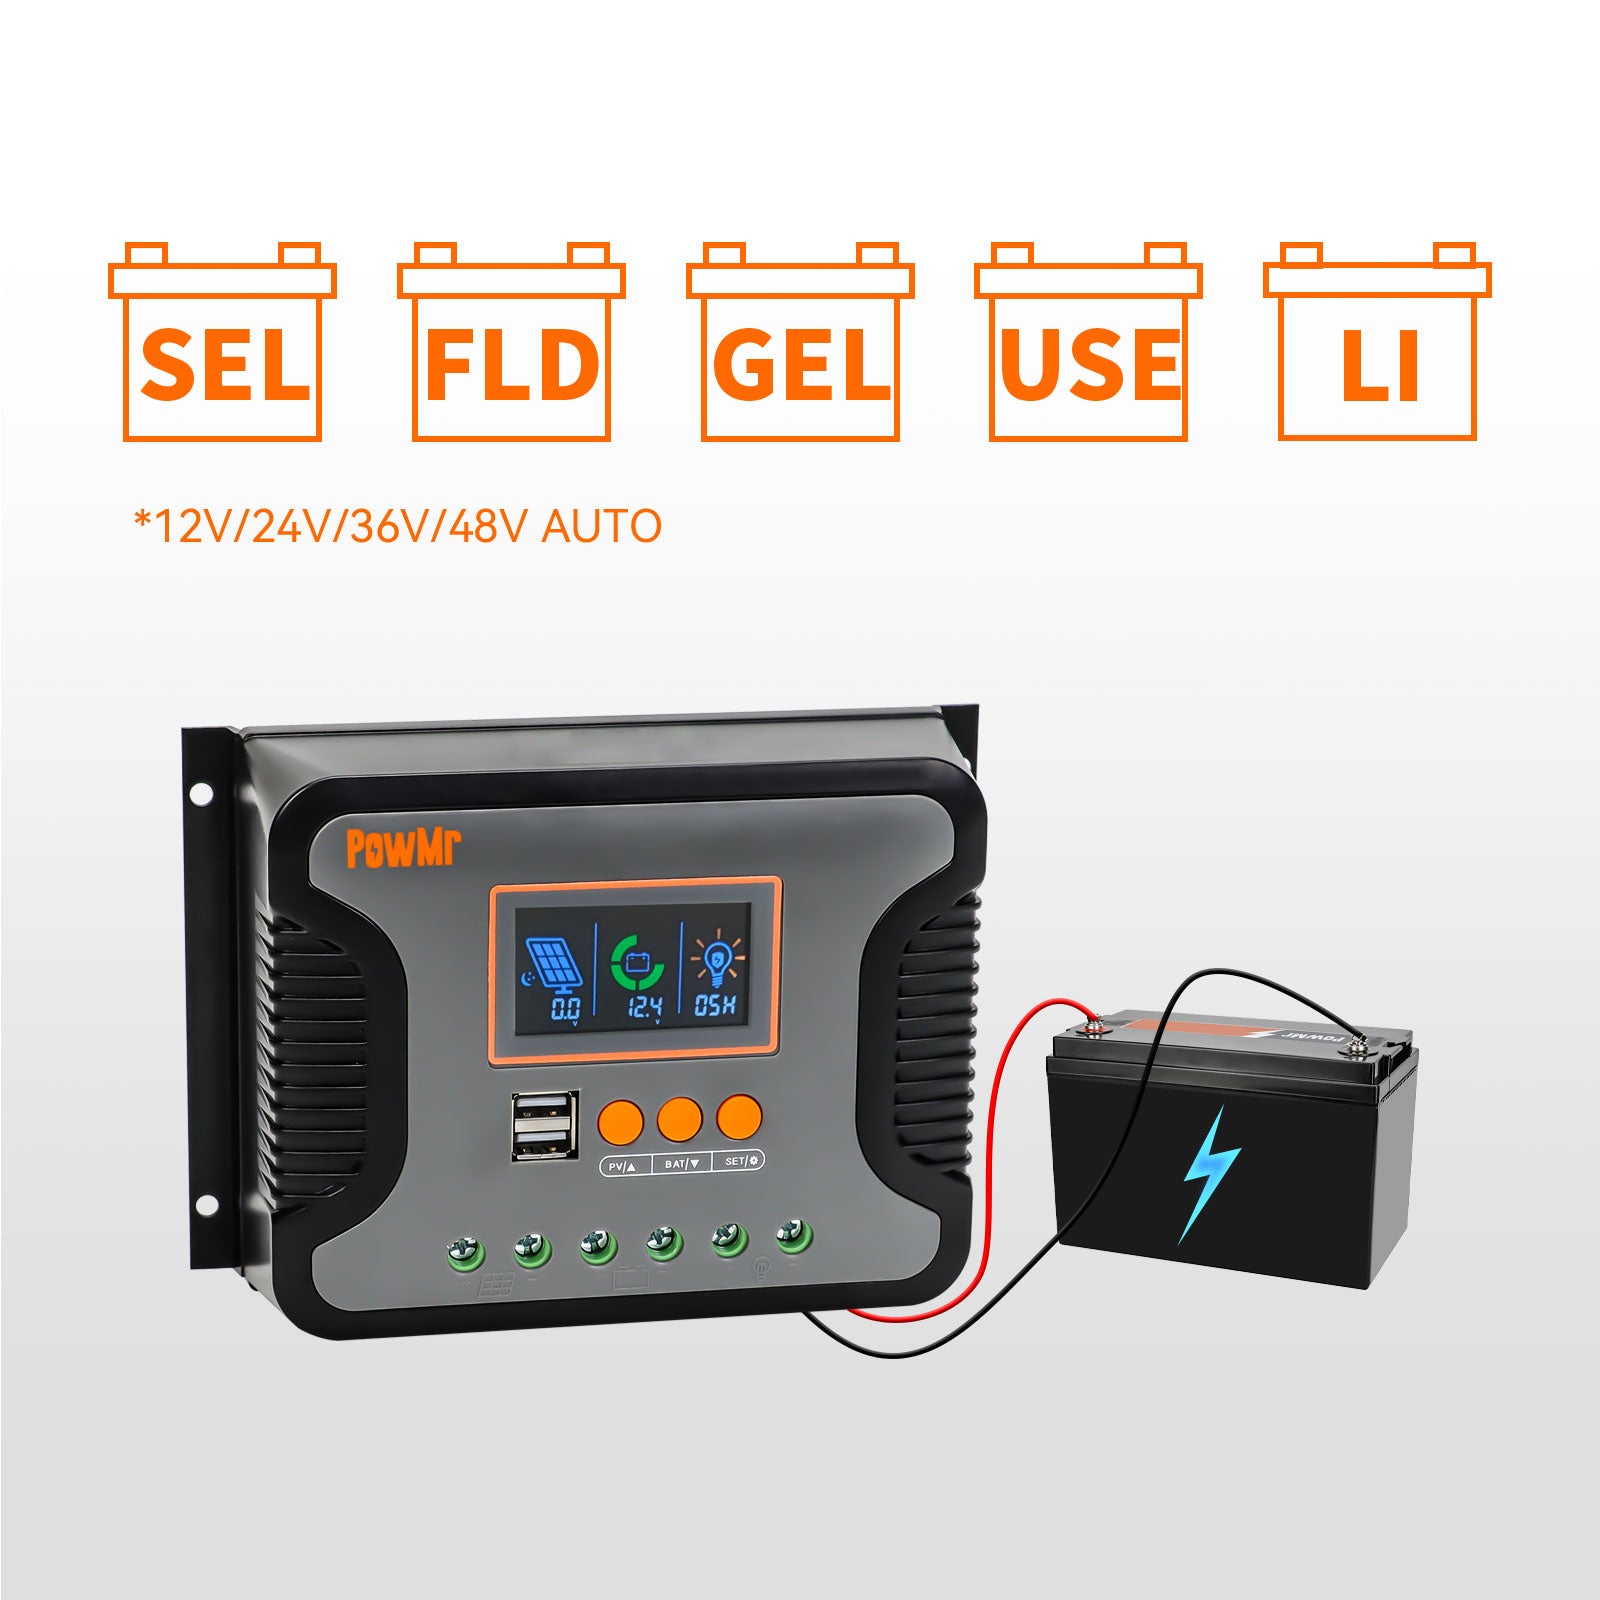 PWM solar charge controller for 12v 24v 36v 48v solar batteries